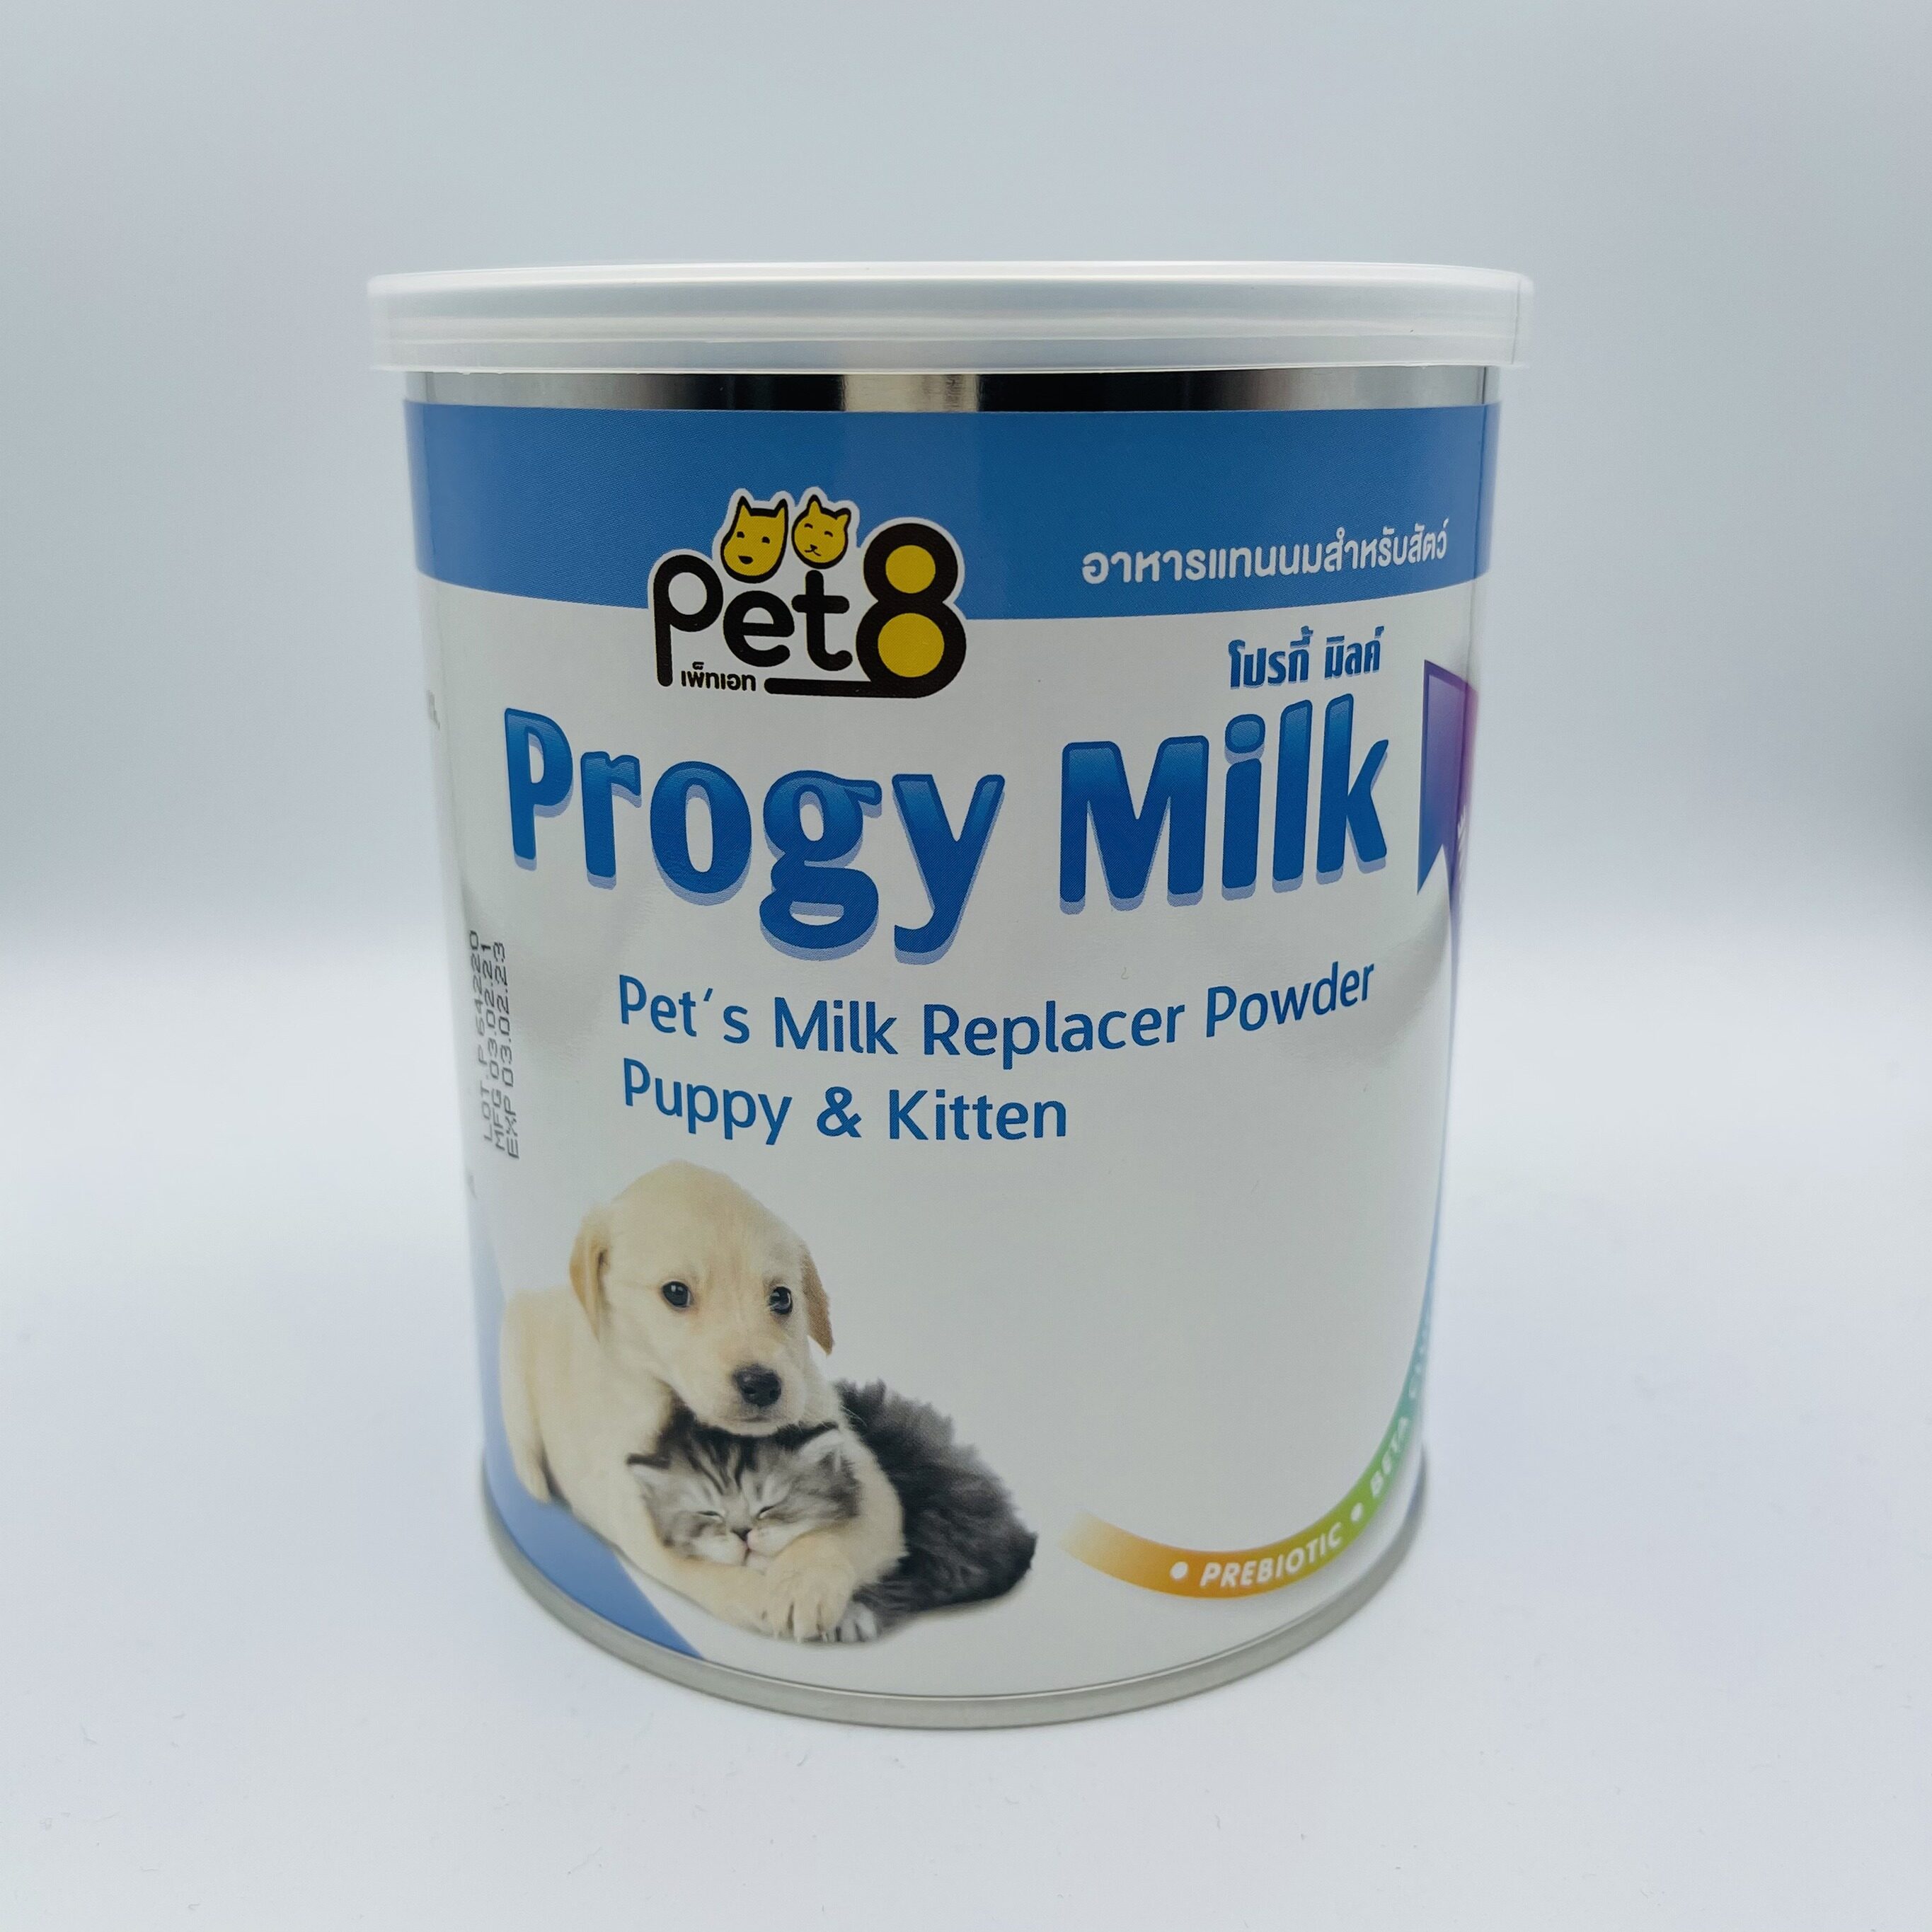 Pet8 Progy Milk นมผงสำหรับสัตว์ นมผง สำหรับสุนัขและแมว 250g (LL21)